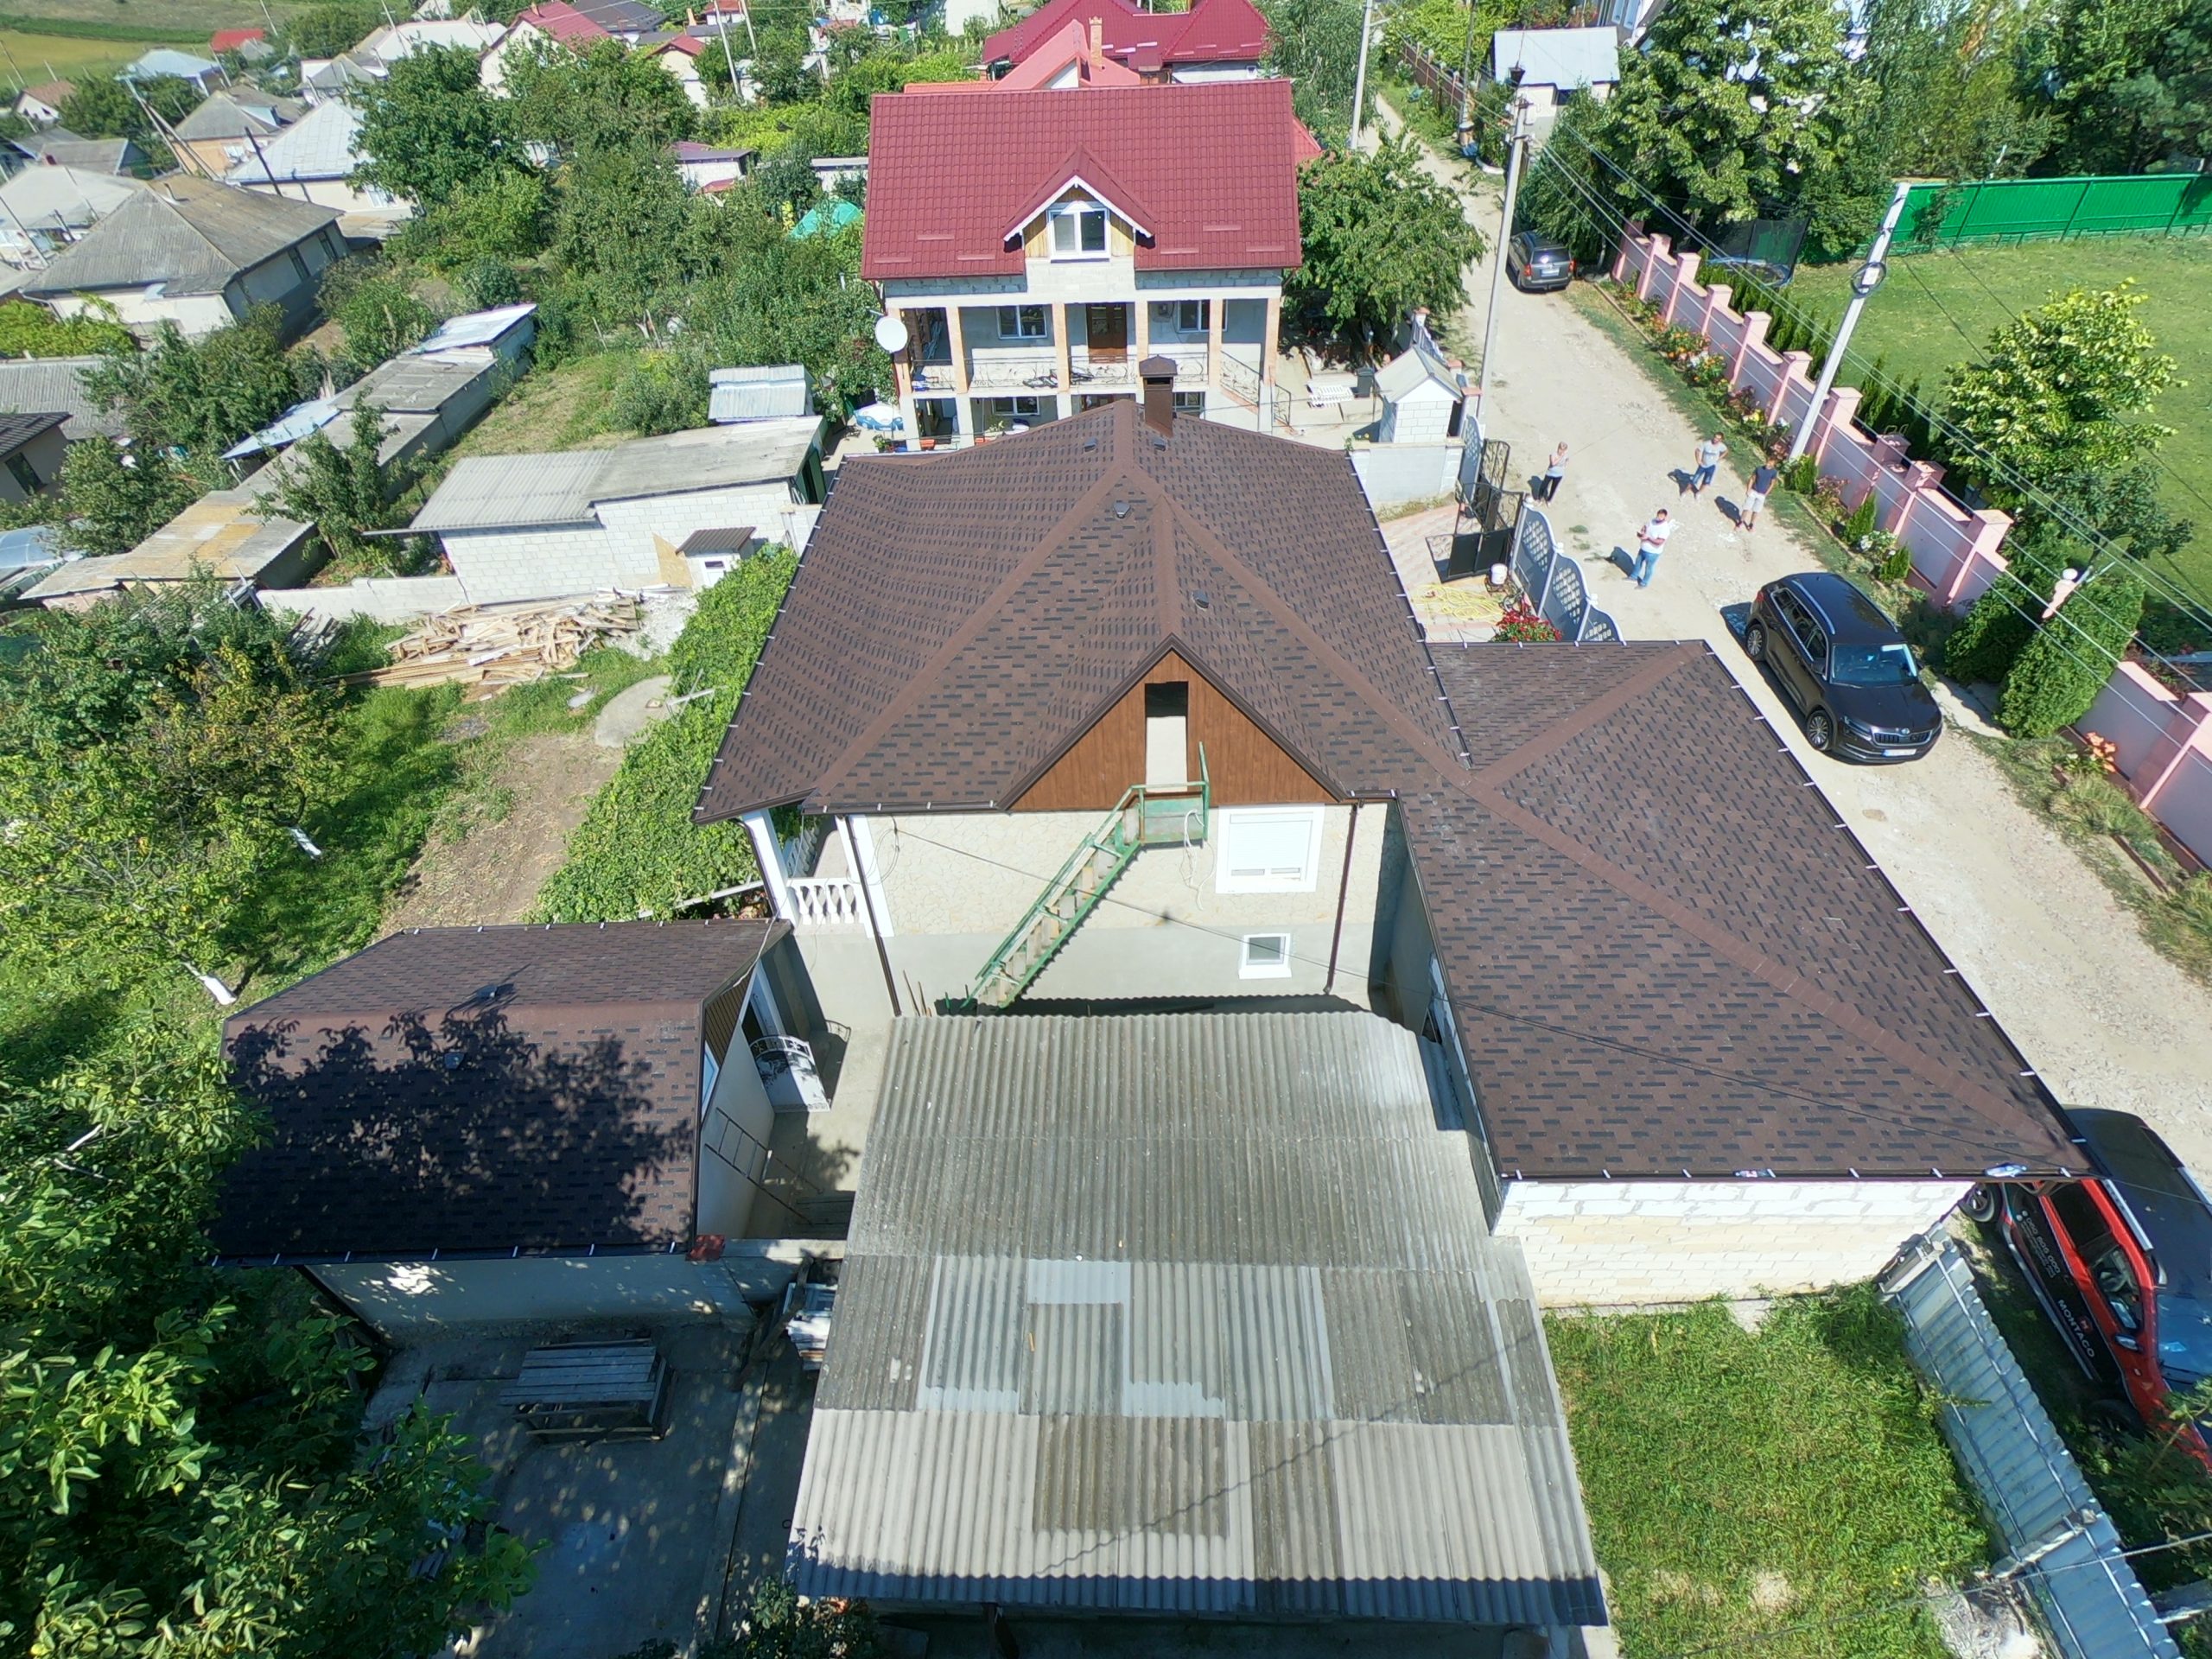 Restaurarea acoperișului premium